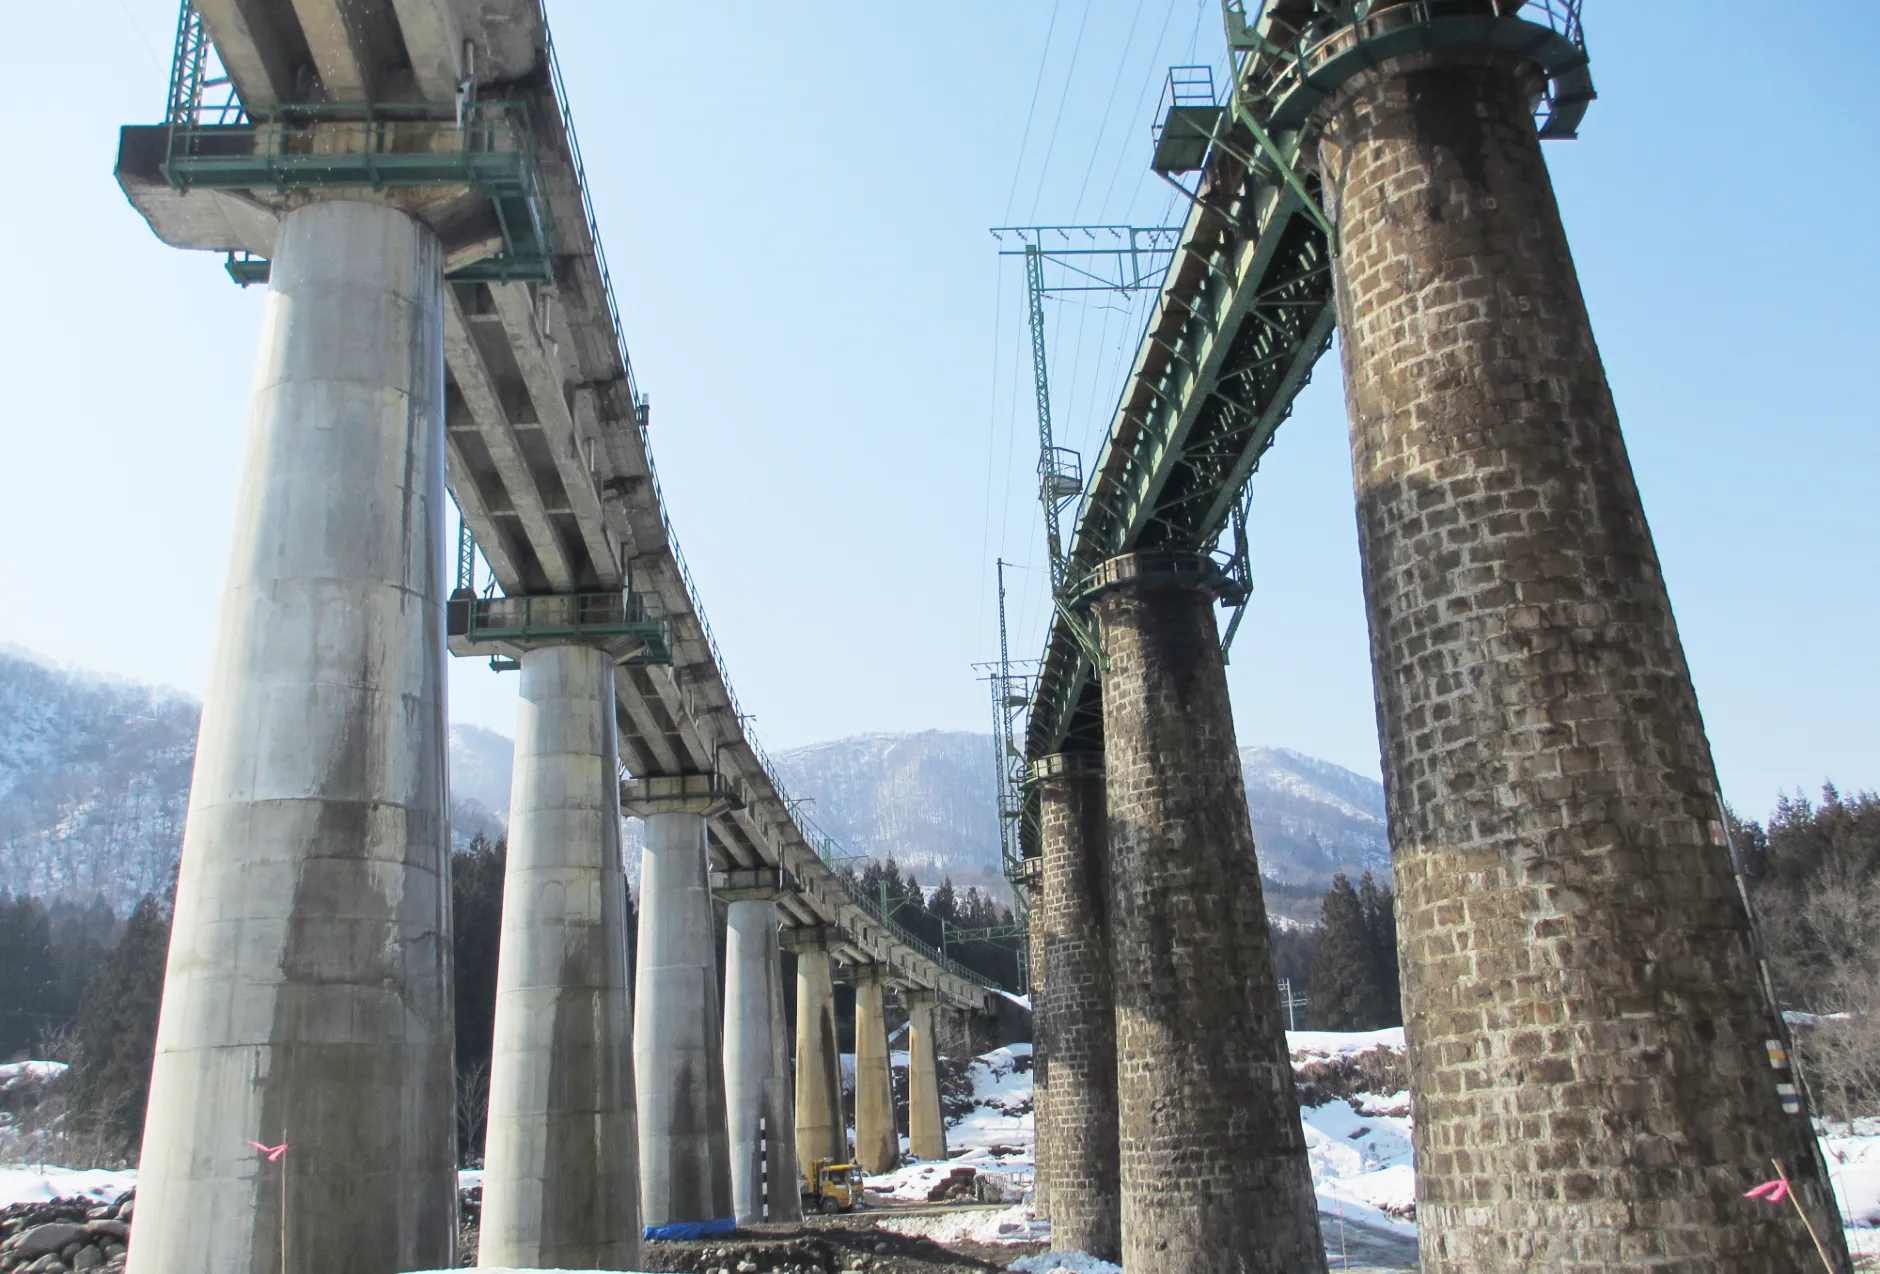 JR上越線 上越線土樽間第1魚野川橋りょうほか3橋りょう耐震補強工事のサムネイル画像です